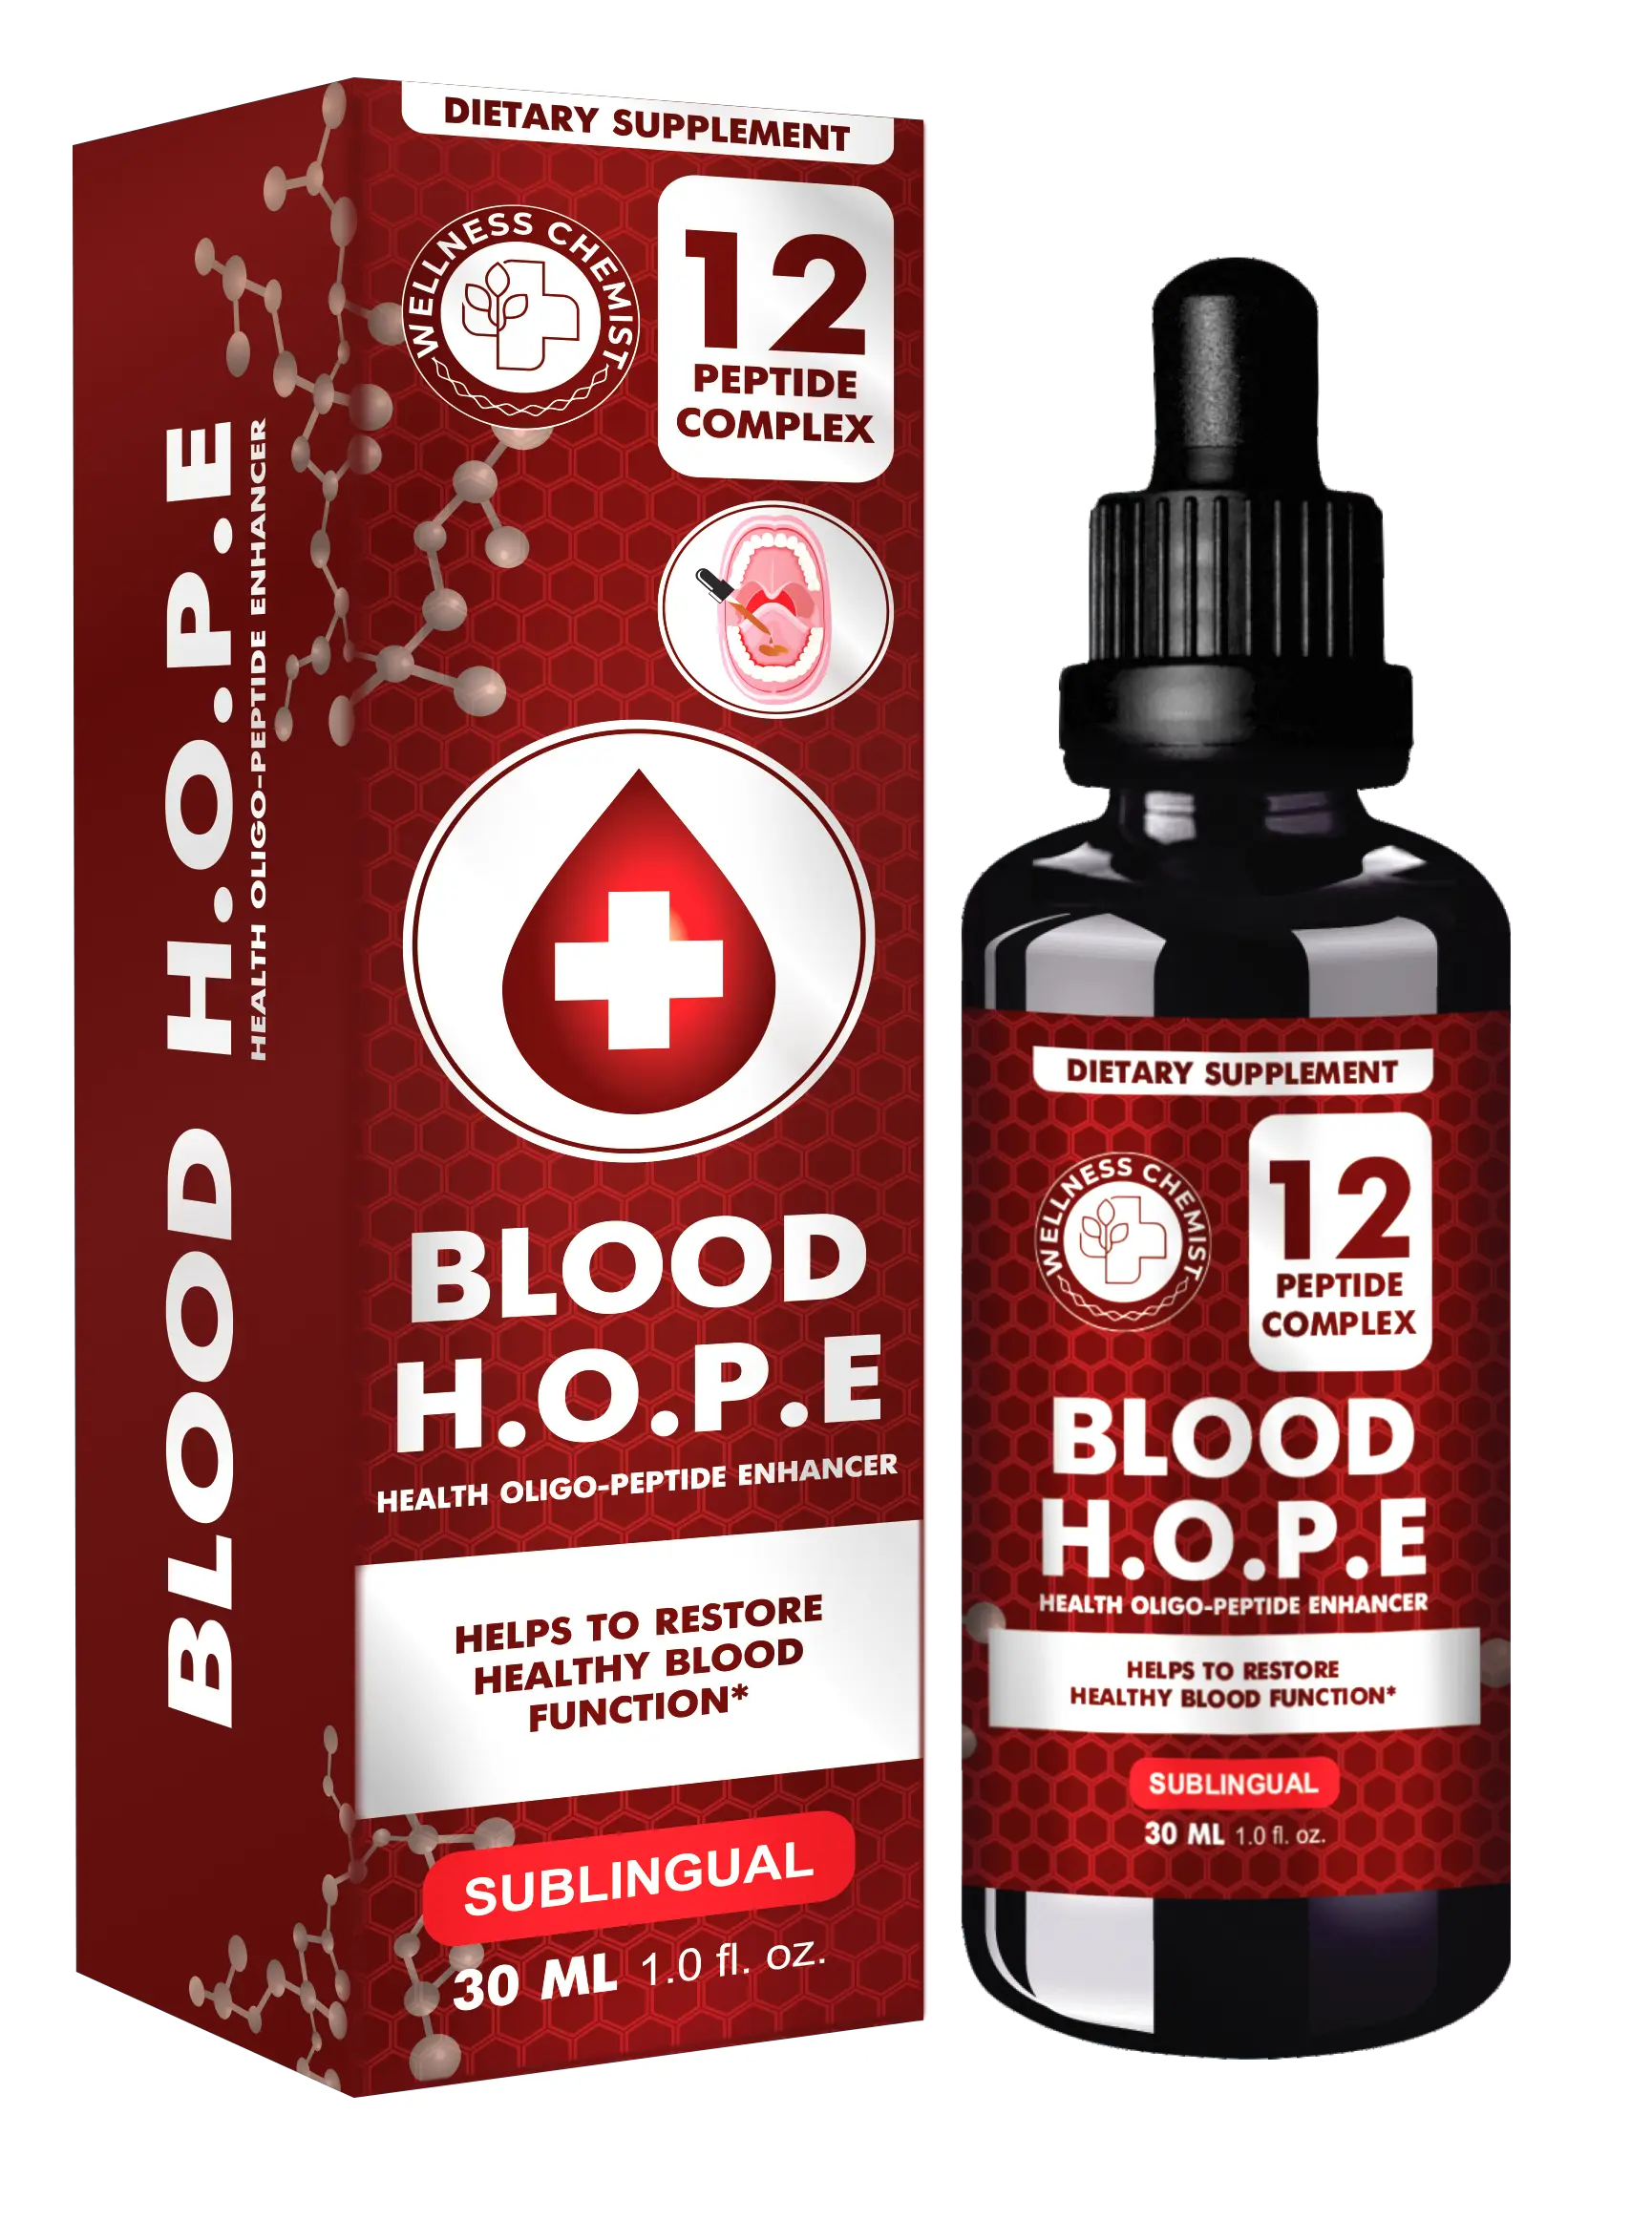 H.O.P.E. Blood пептидный комплекс №12 для восстановление здоровой функции крови